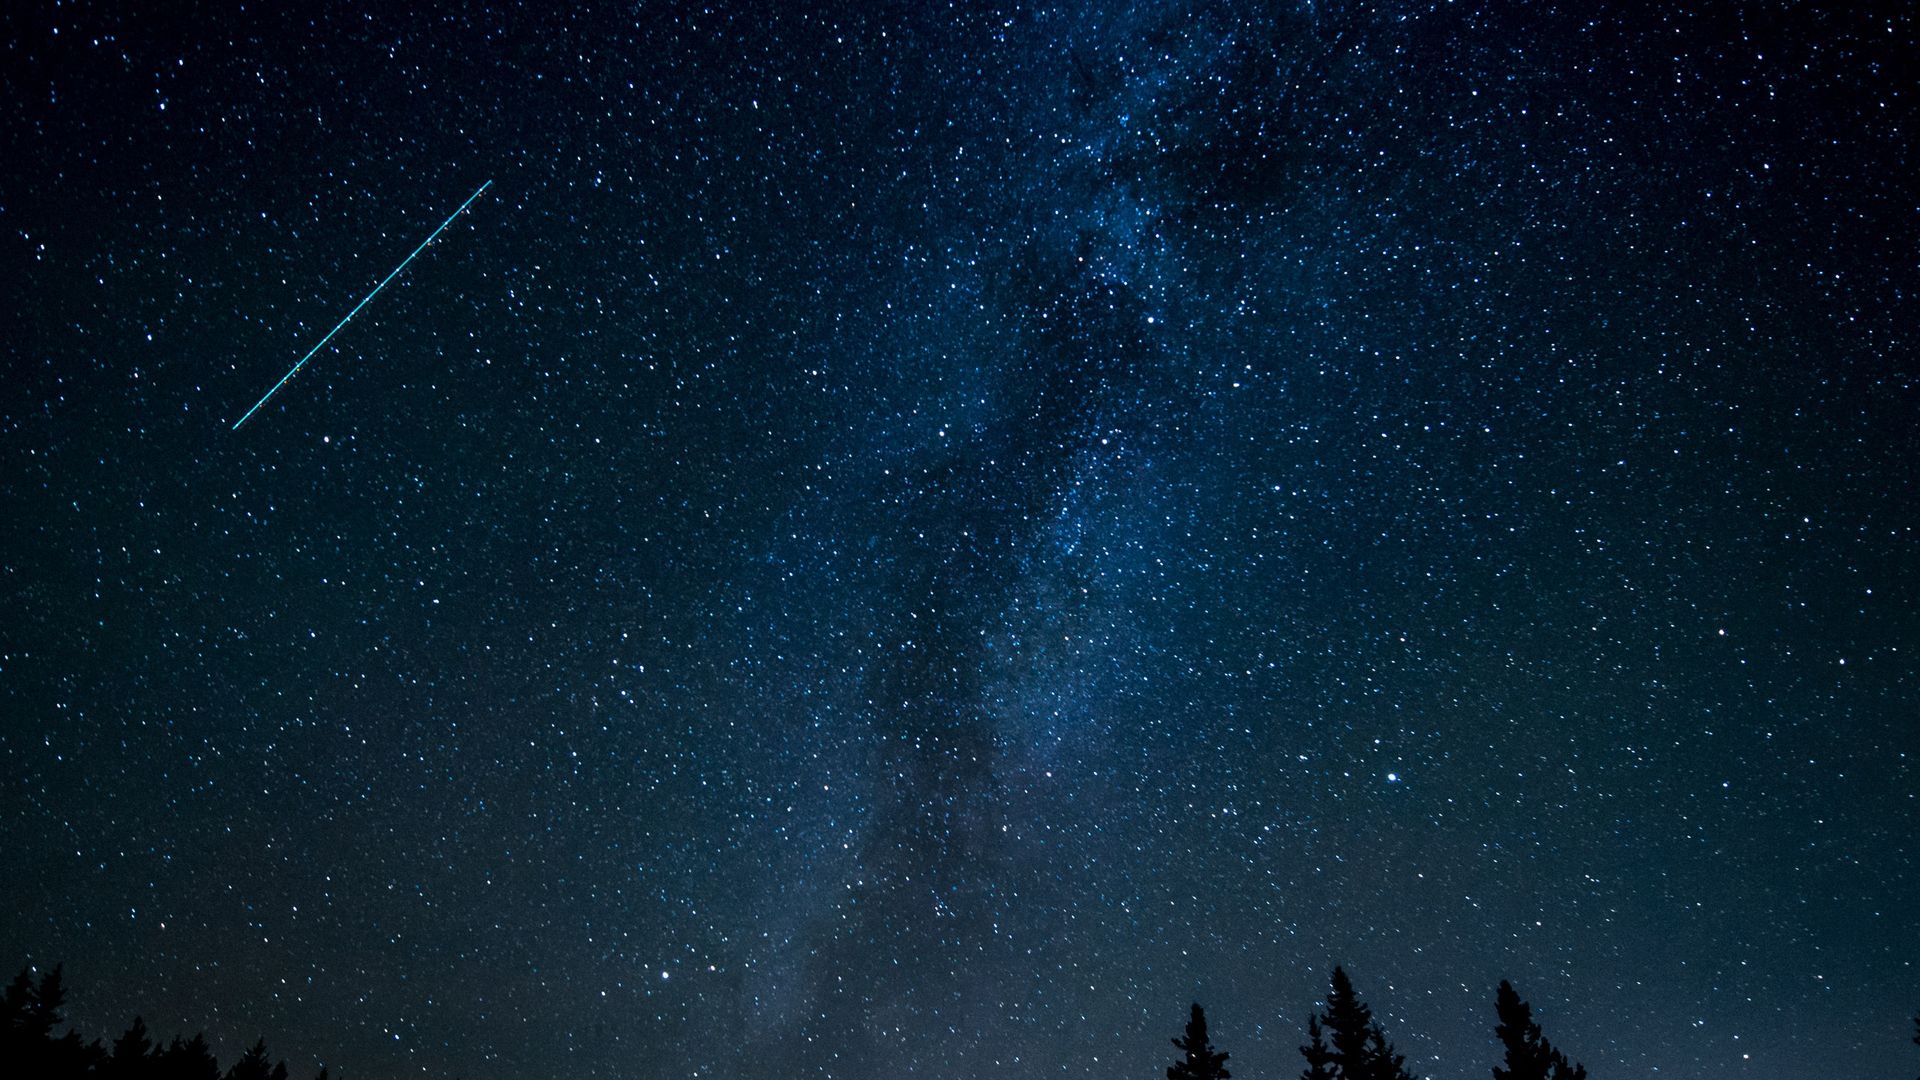 Stars Trees Milky Way Dark Blue Sky - Estrellas 11 De Enero 2019 - HD Wallpaper 